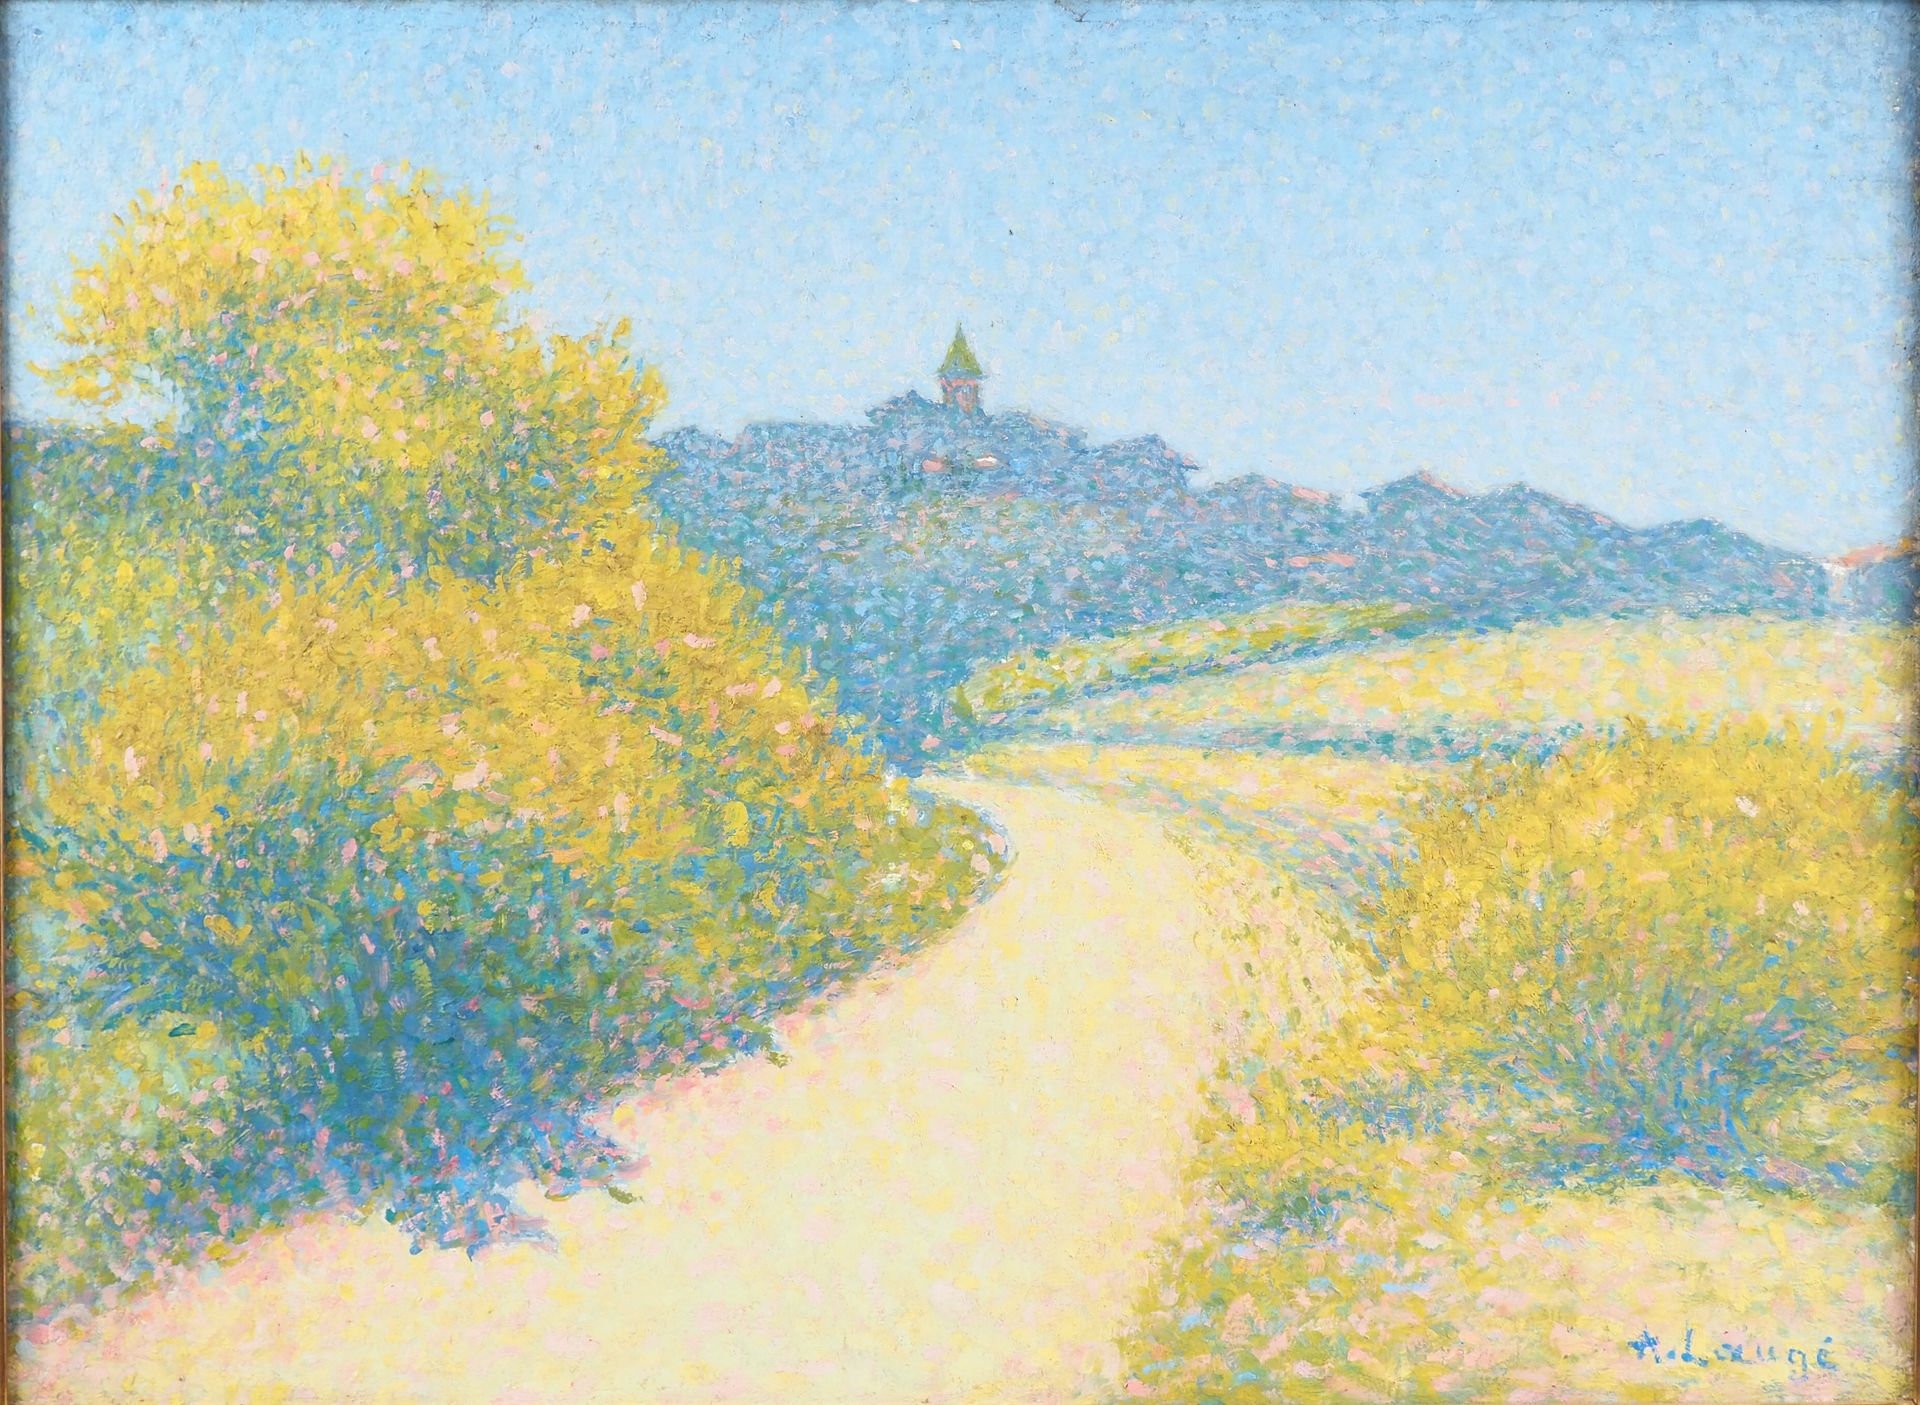 Null A.刘海。

"通往凯尔豪的扫帚之路"。

布面油画。约1920-1925年

右下角有签名，54 x 73 cm

妮可-坦布里尼的证书将交给买家。